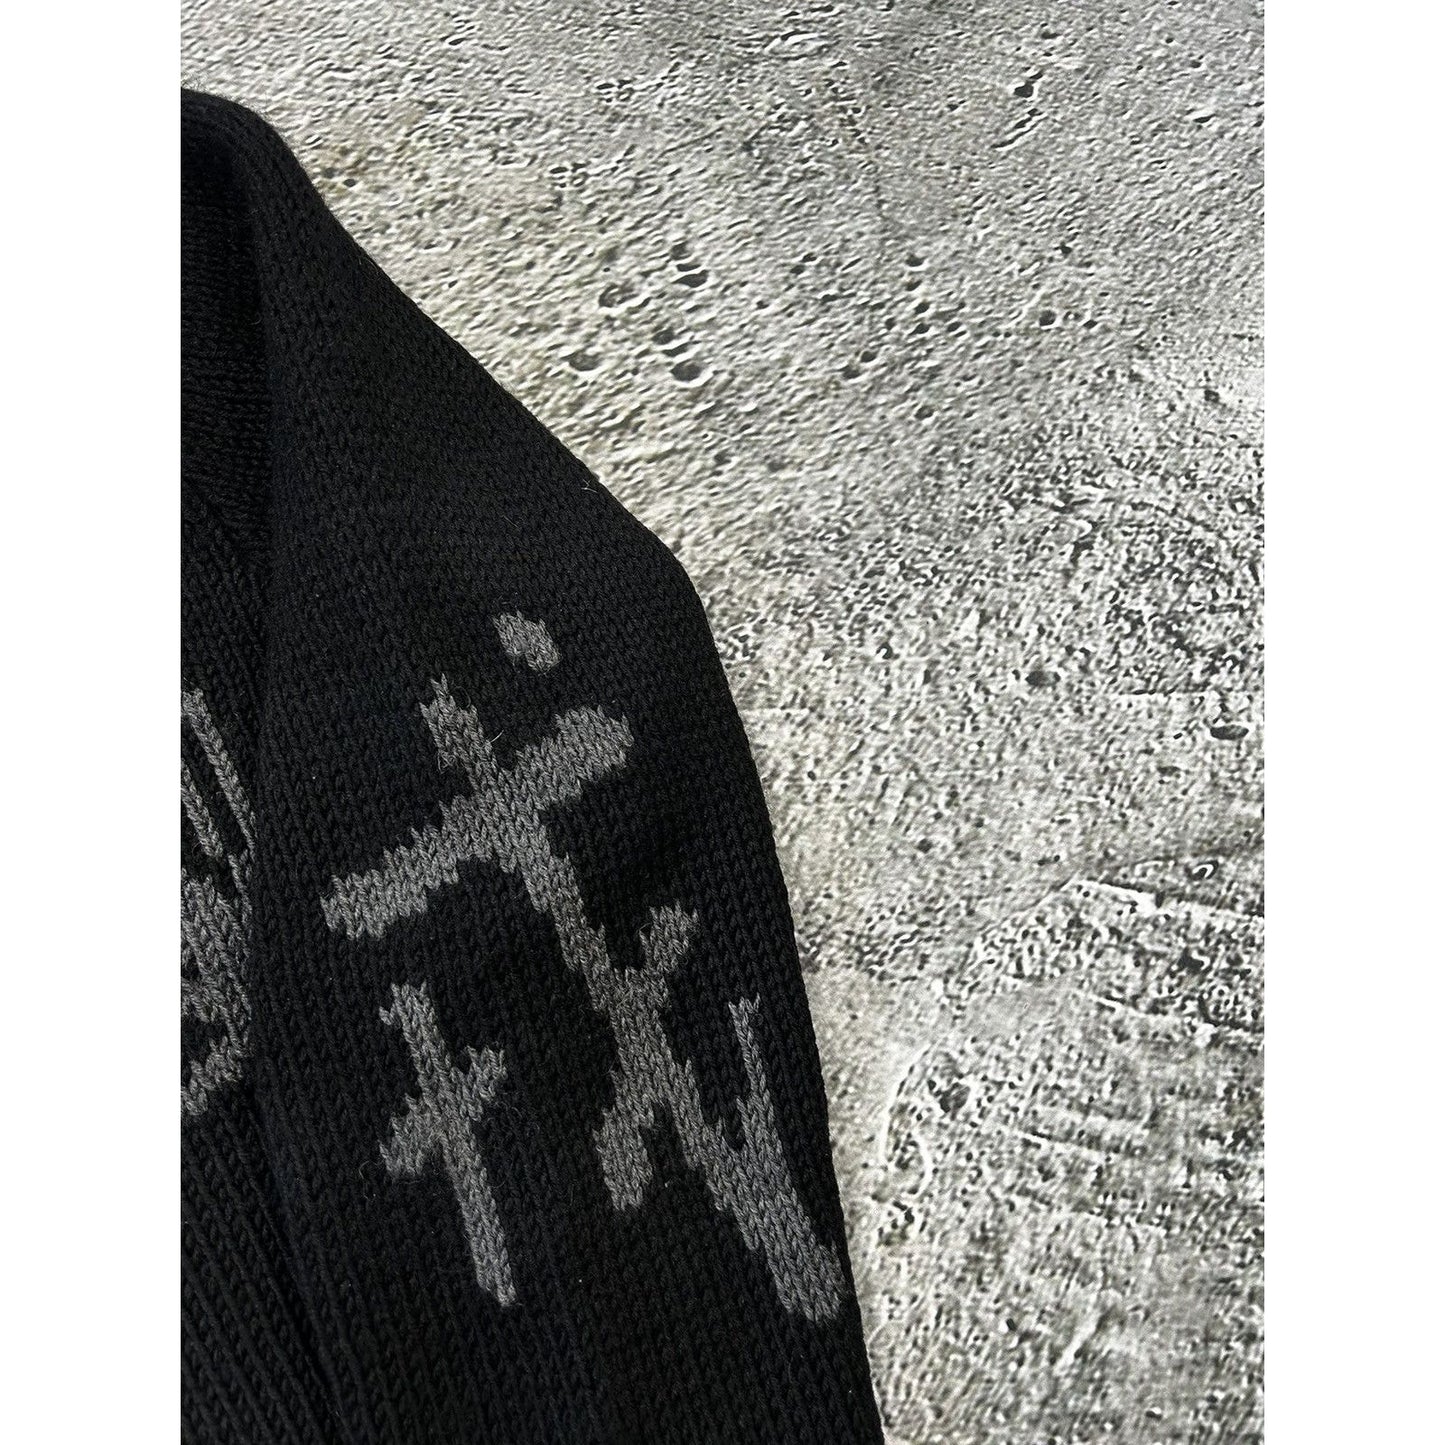 Evisu knit zip hoodie wool sweater big logo black vintage